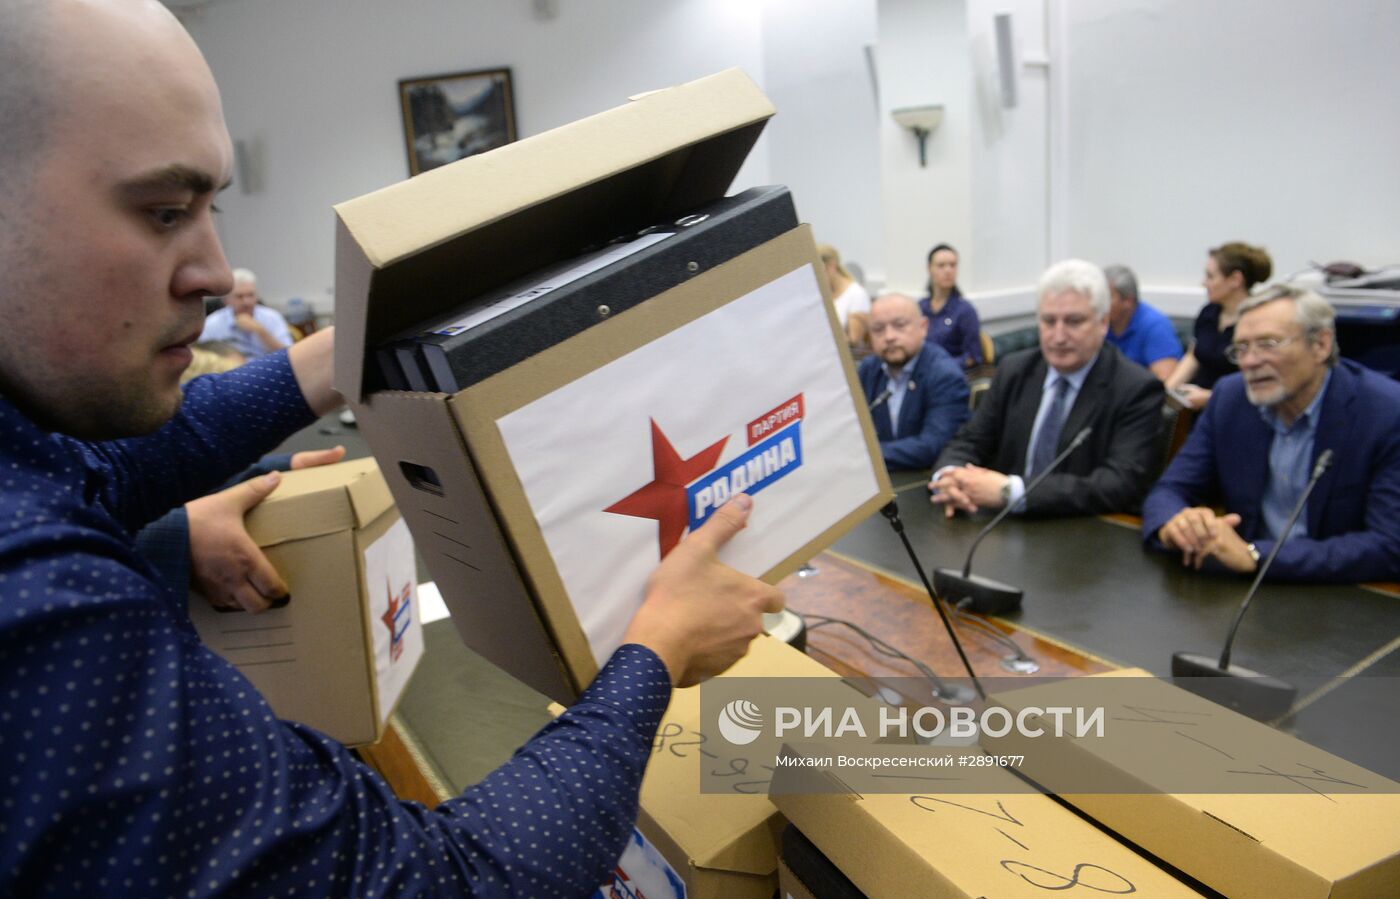 Подача документов партией "Родина" на регистрацию своих кандидатов в ЦИК России